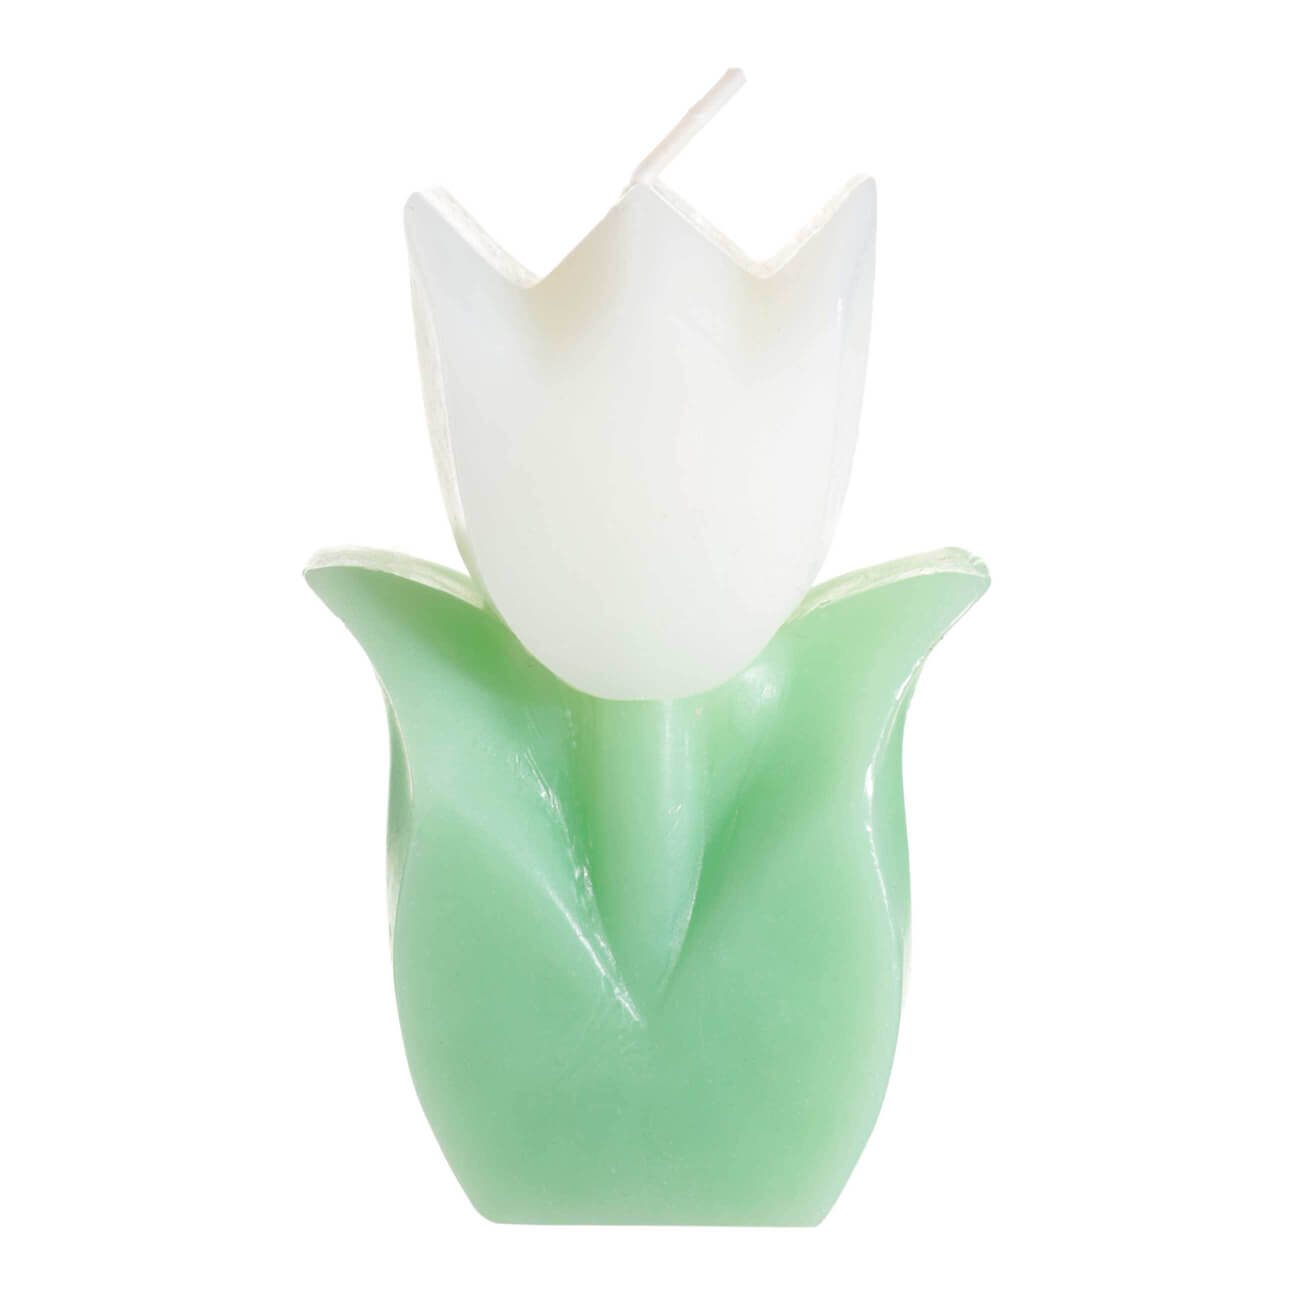 свеча adpal парафин 12х5 8см 348 604 Свеча, 10 см, бело-зеленая, Тюльпан, Tulip garden